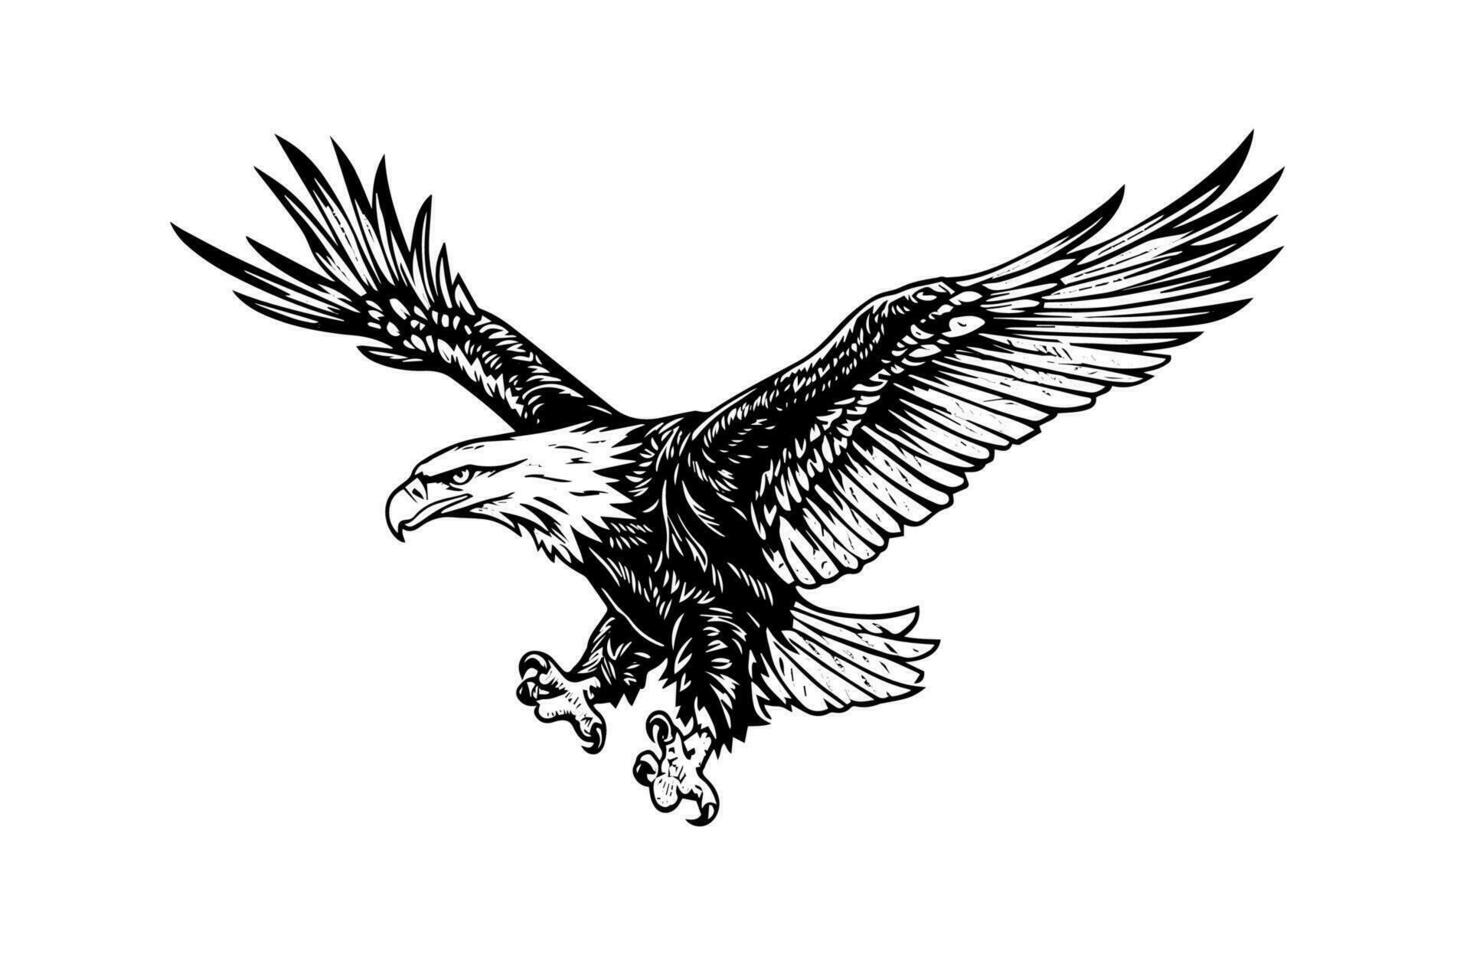 vliegend adelaar logotype mascotte in gravure stijl. vector illustratie van teken of markering.